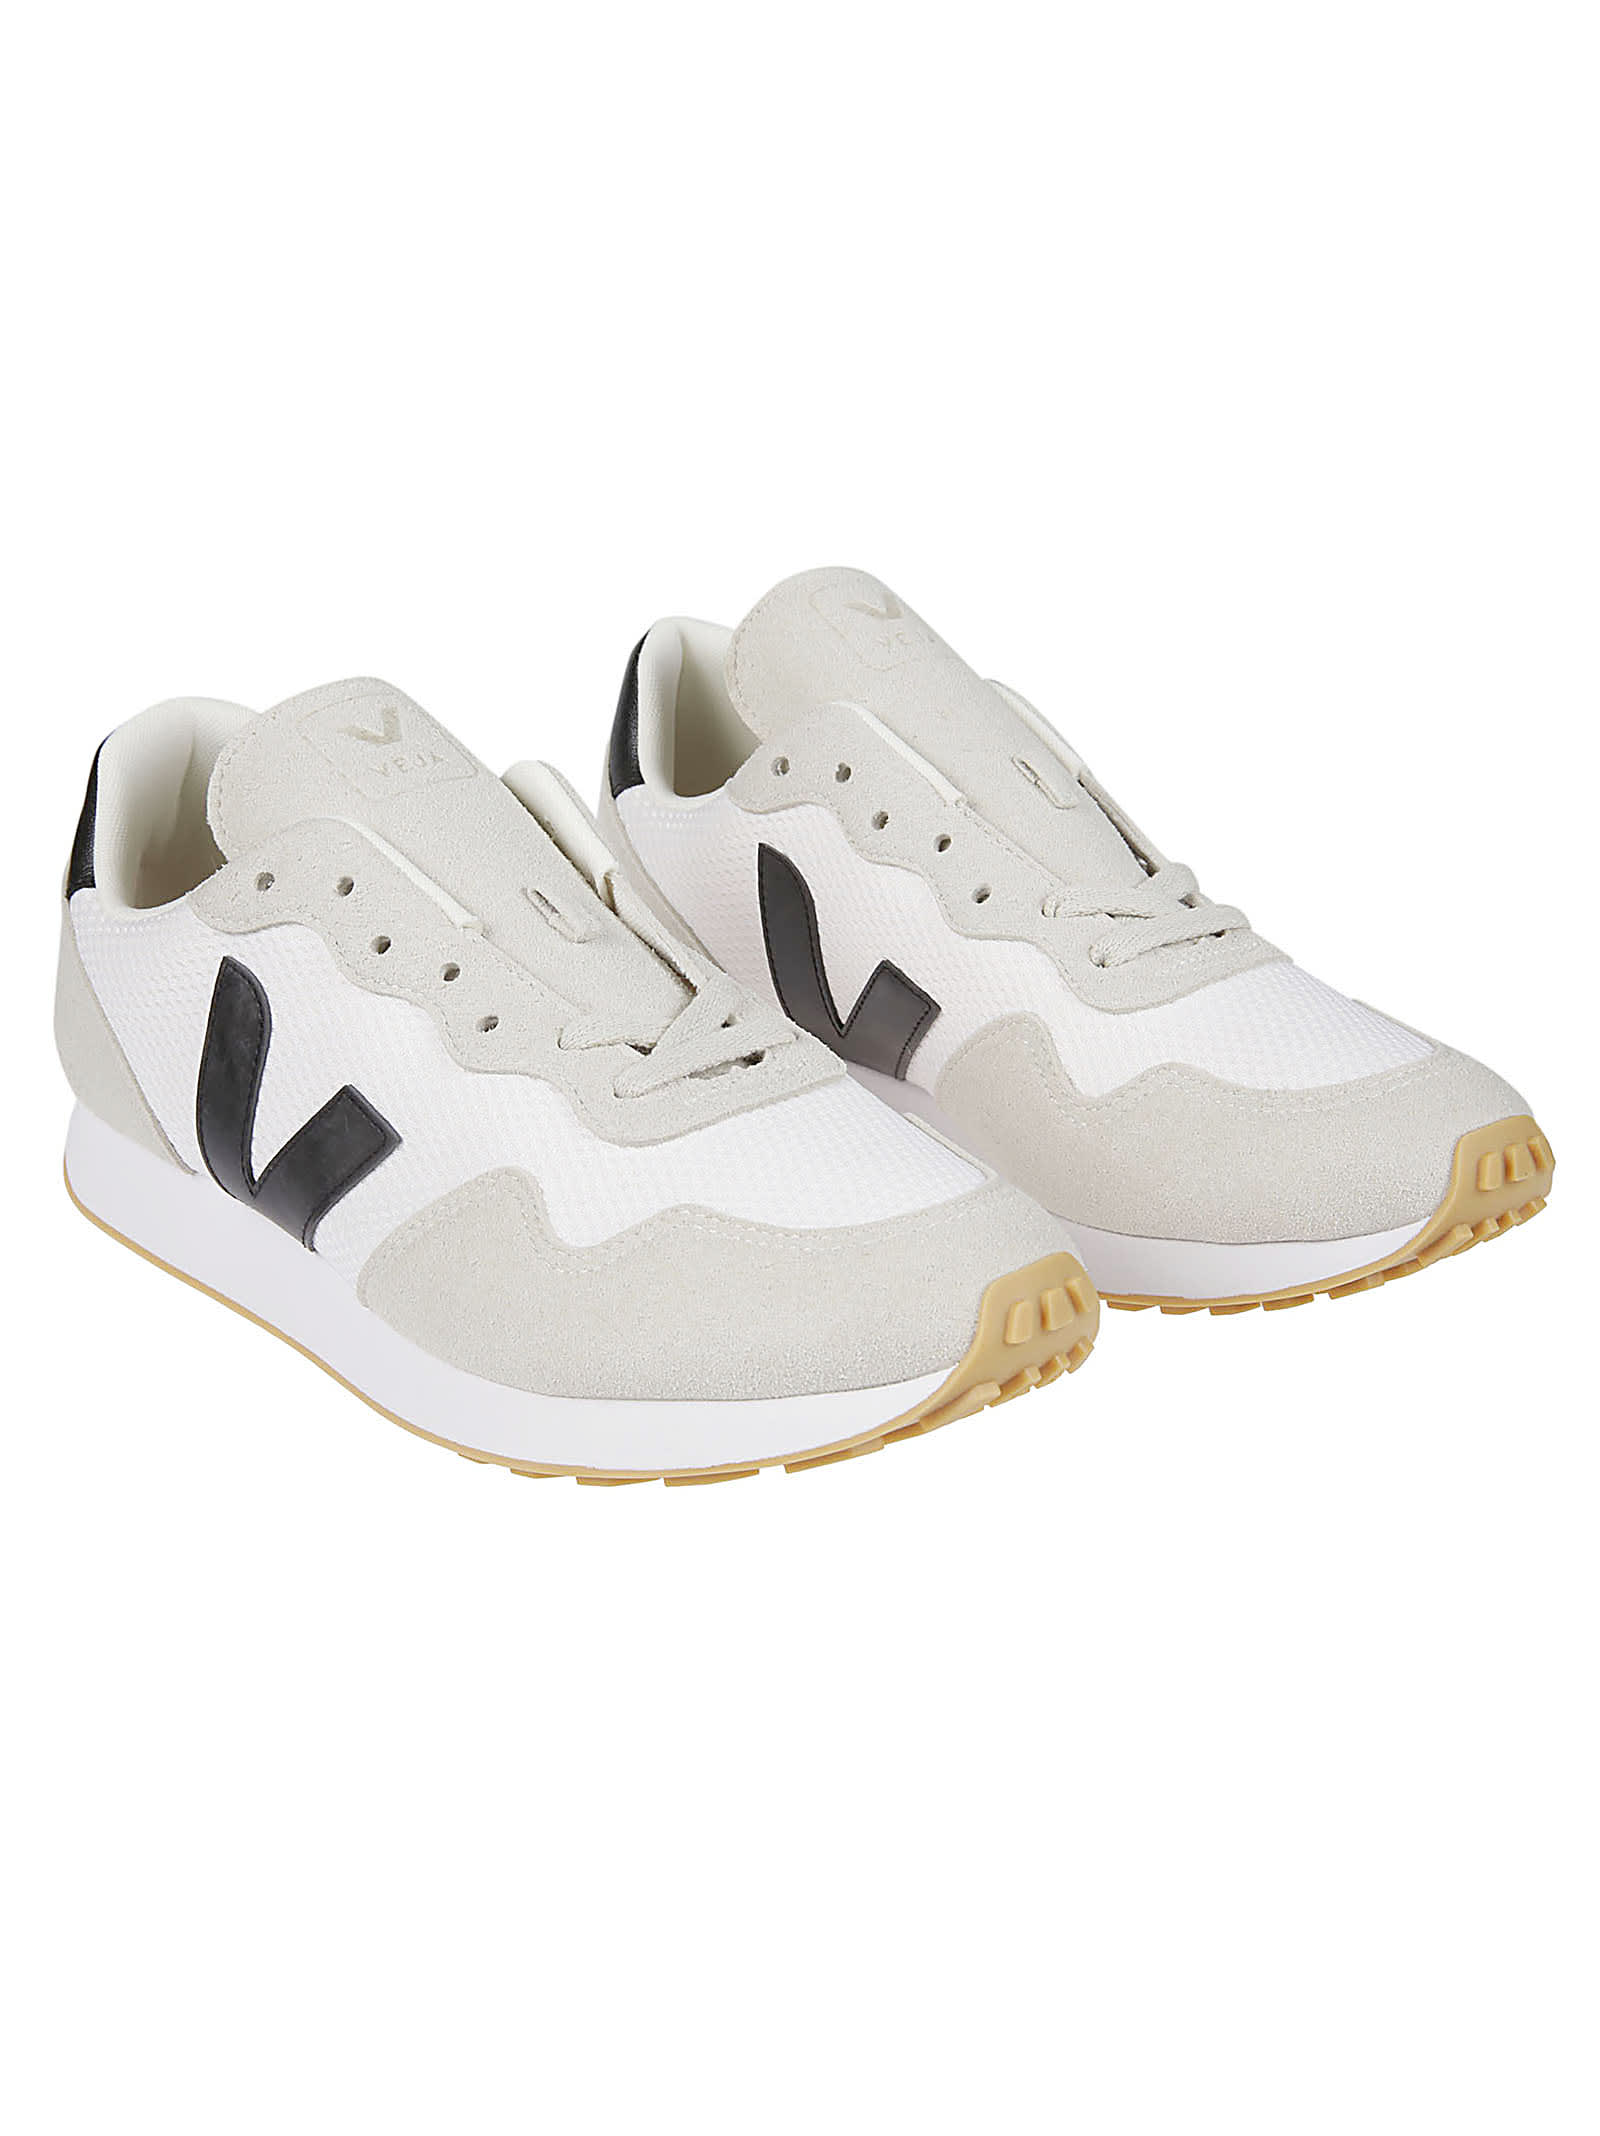 Shop Veja Sdu Sneakers In White/black/natural